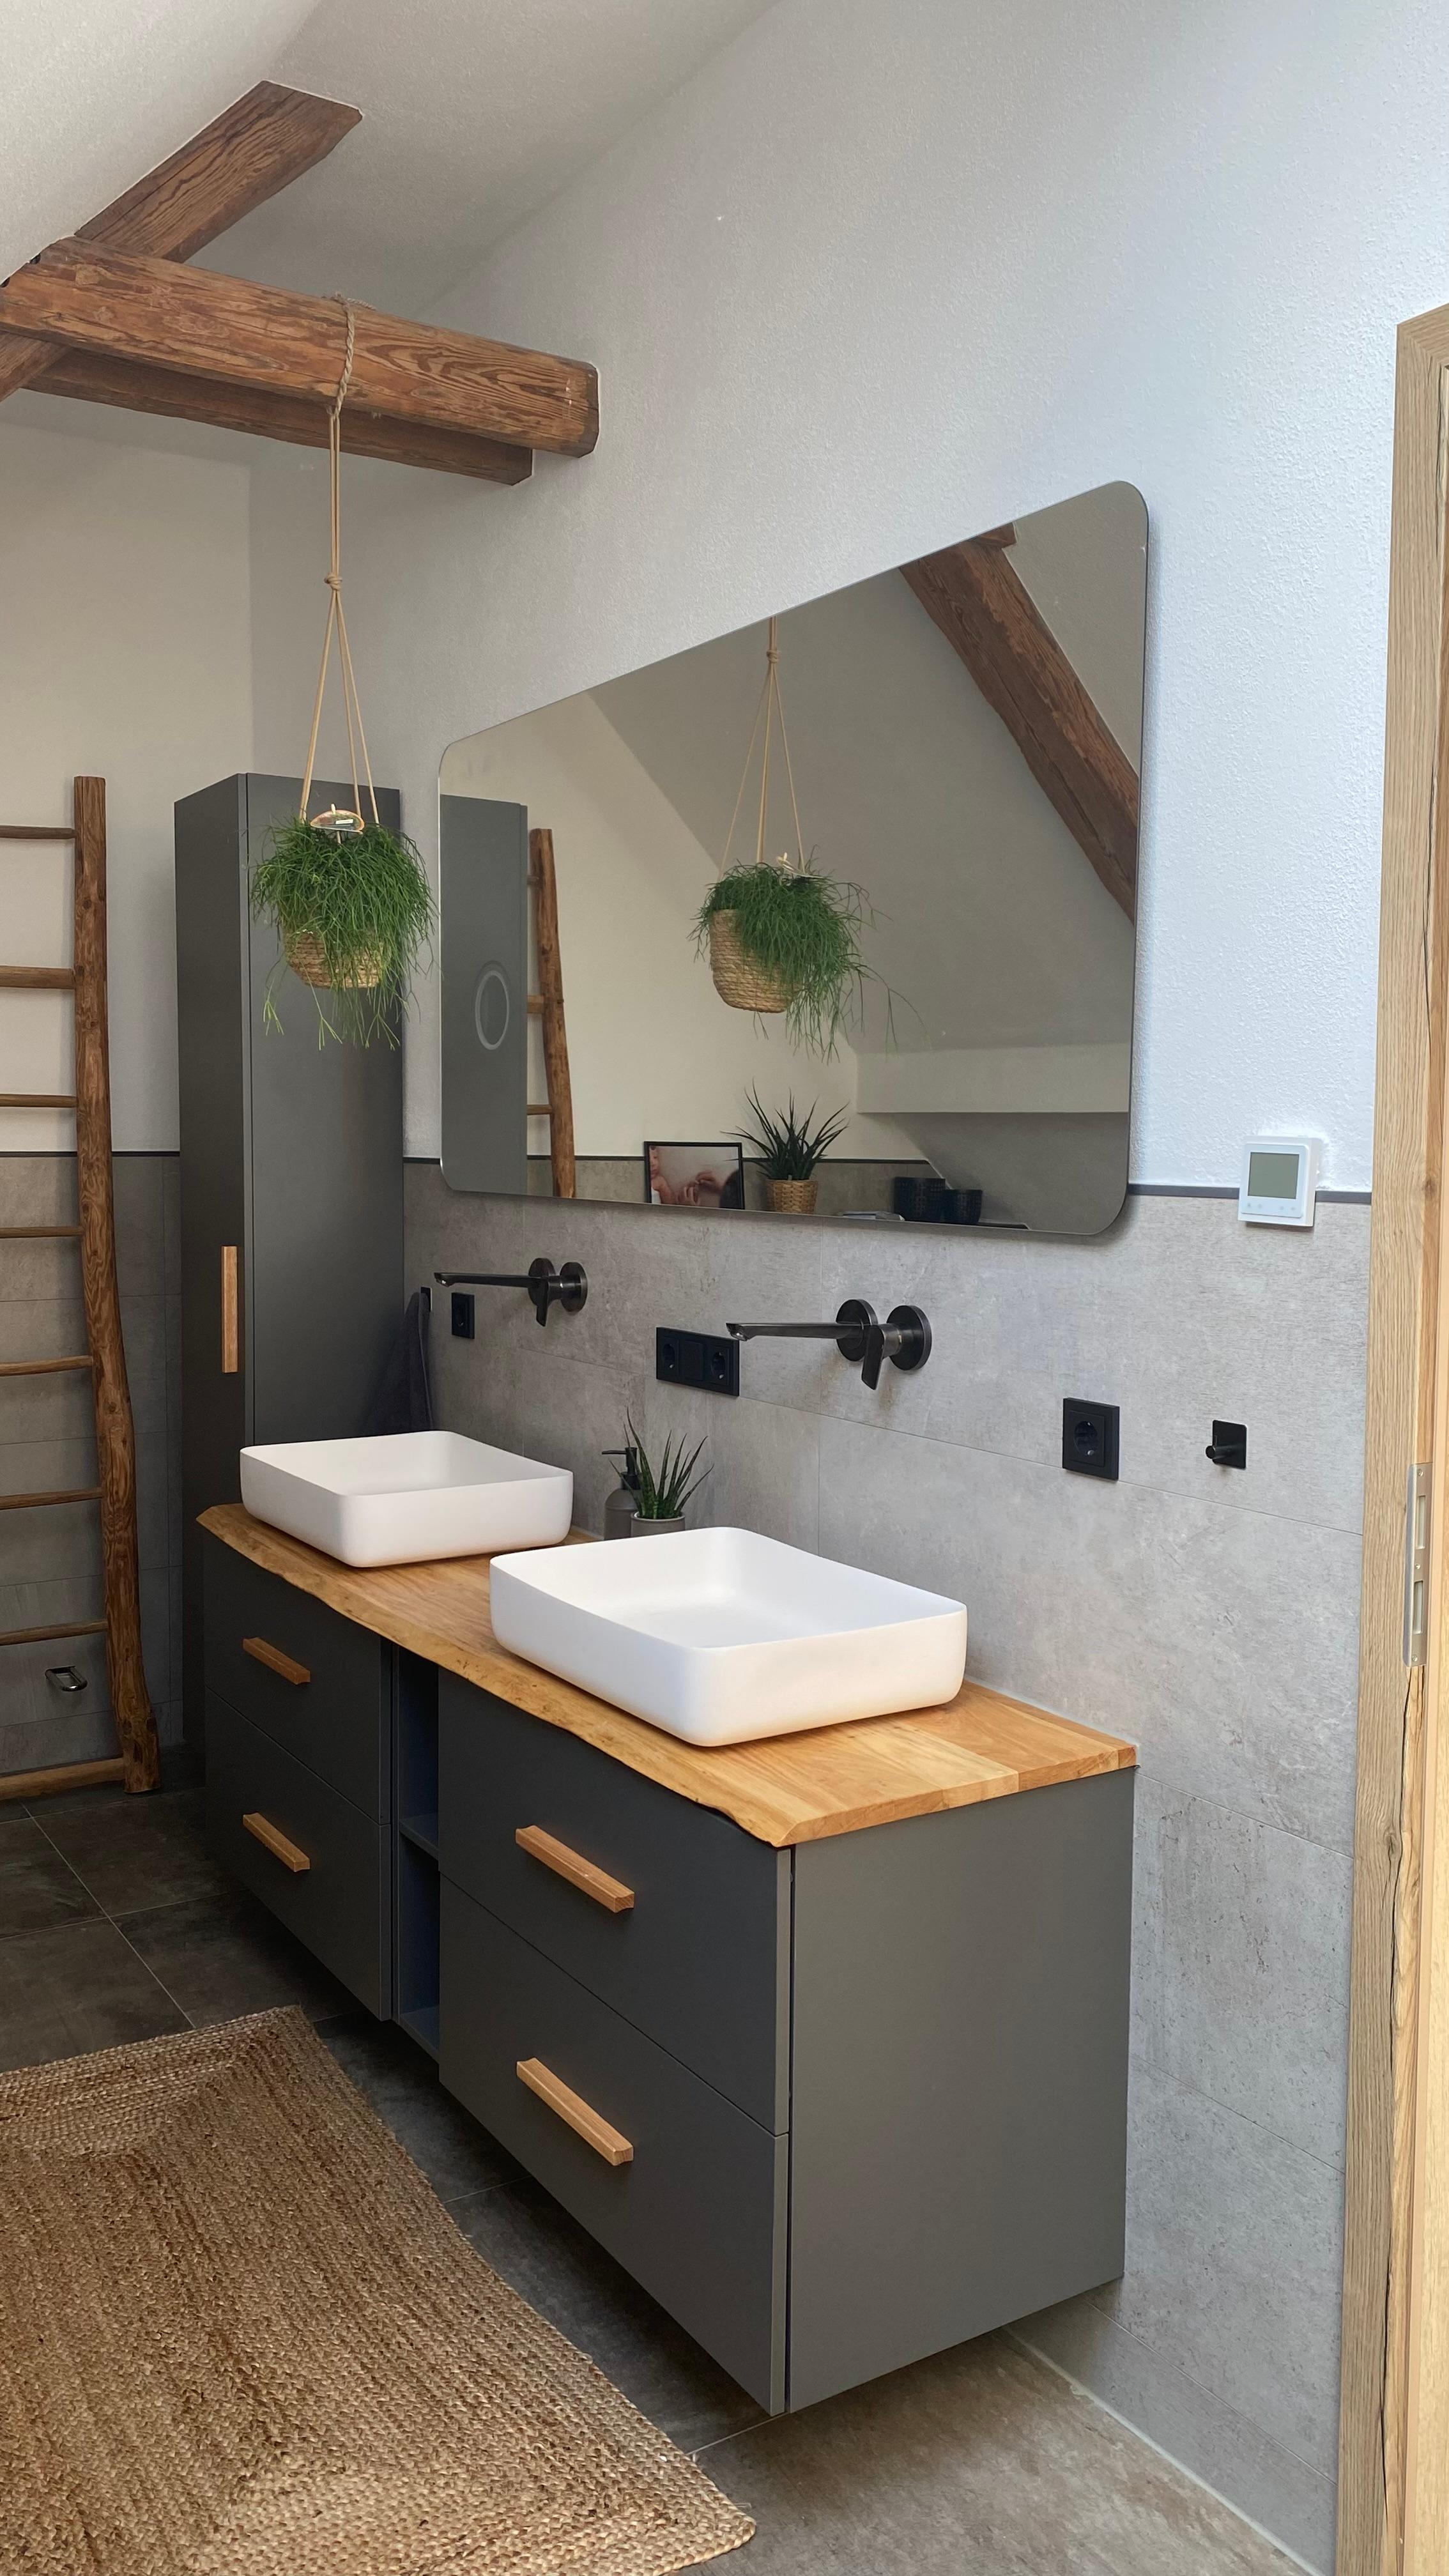 Badezimmer mit DIY Waschtischplatte und der alten Holzleiter aus der Scheune. #interiordesign #industrialdesign